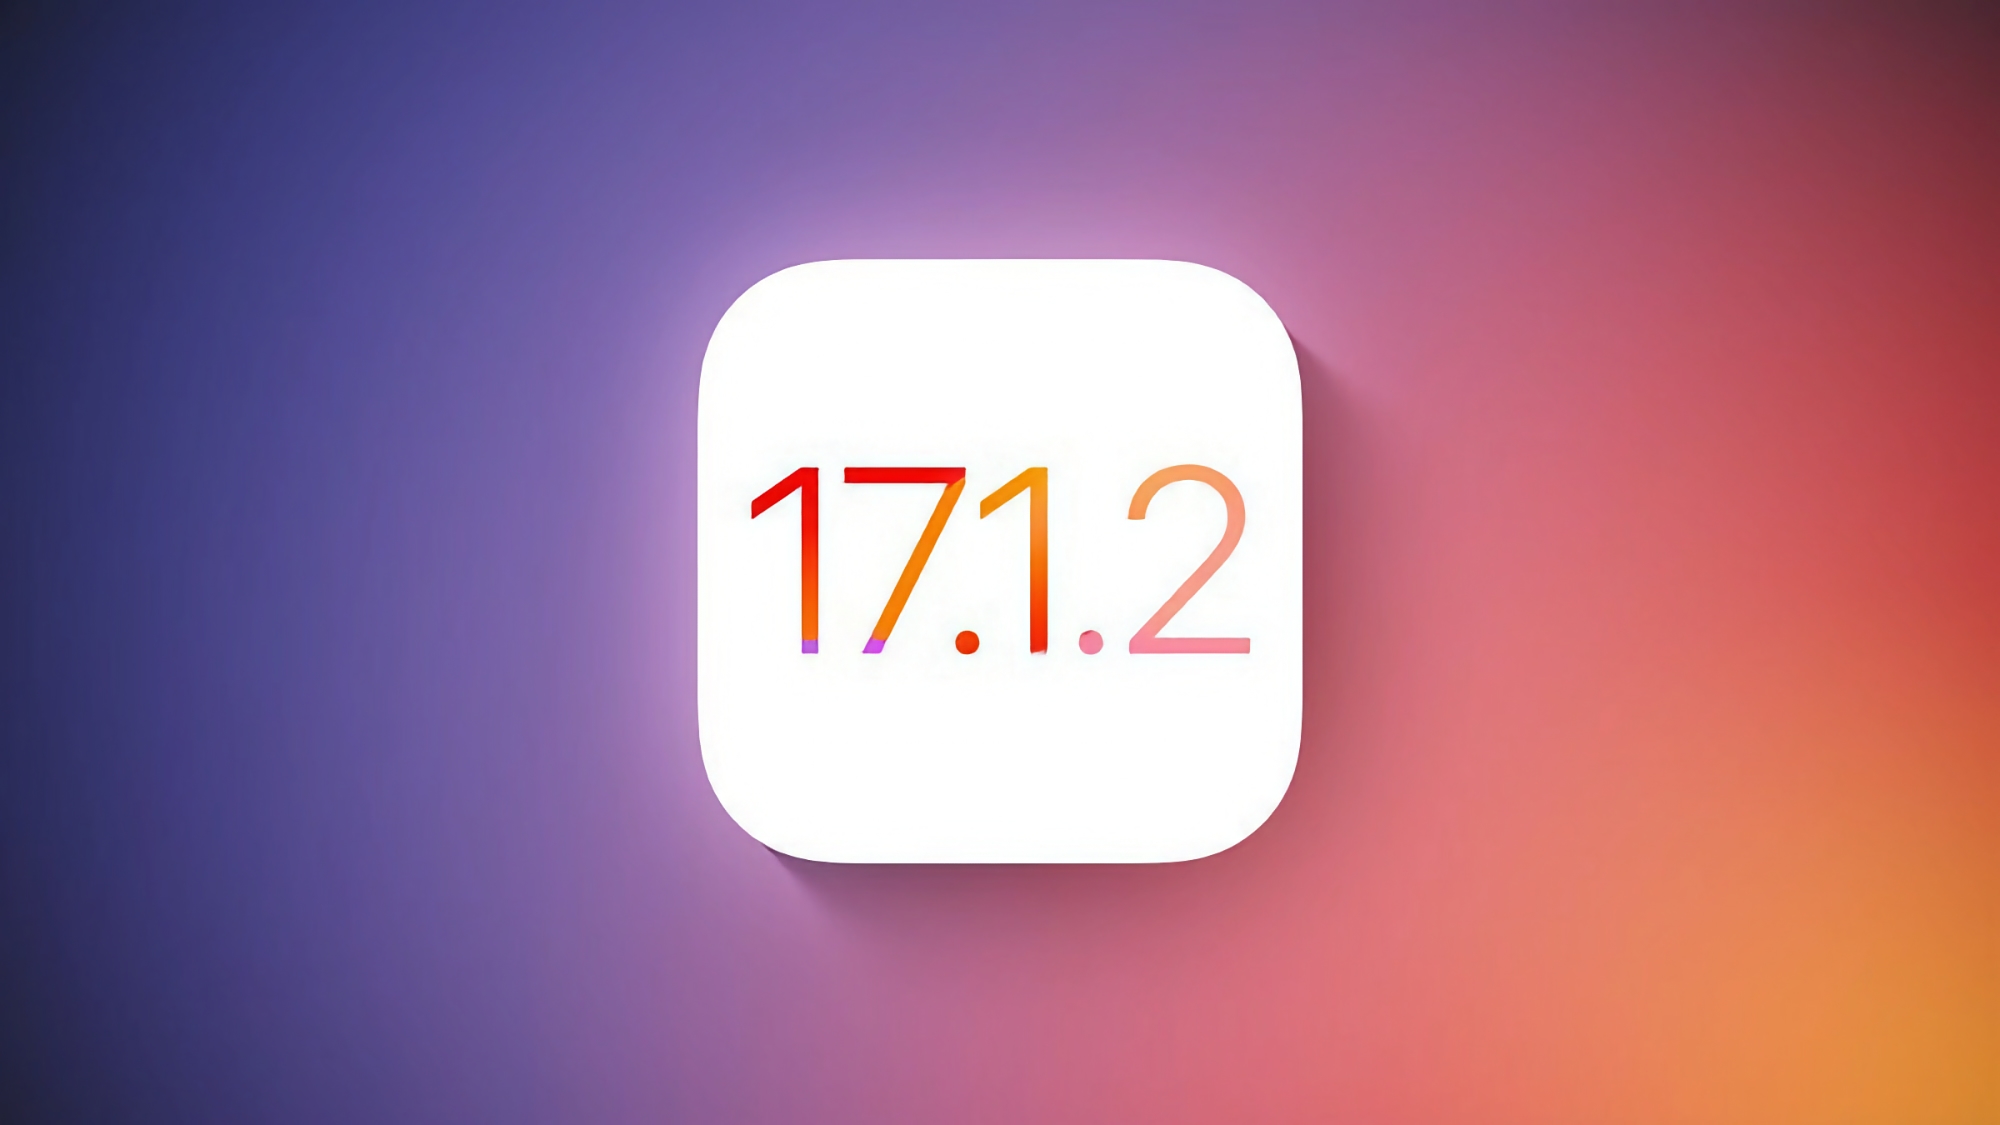 Apple udostępni aktualizację iOS 17.1.2 dla użytkowników iPhone'ów w tym tygodniu